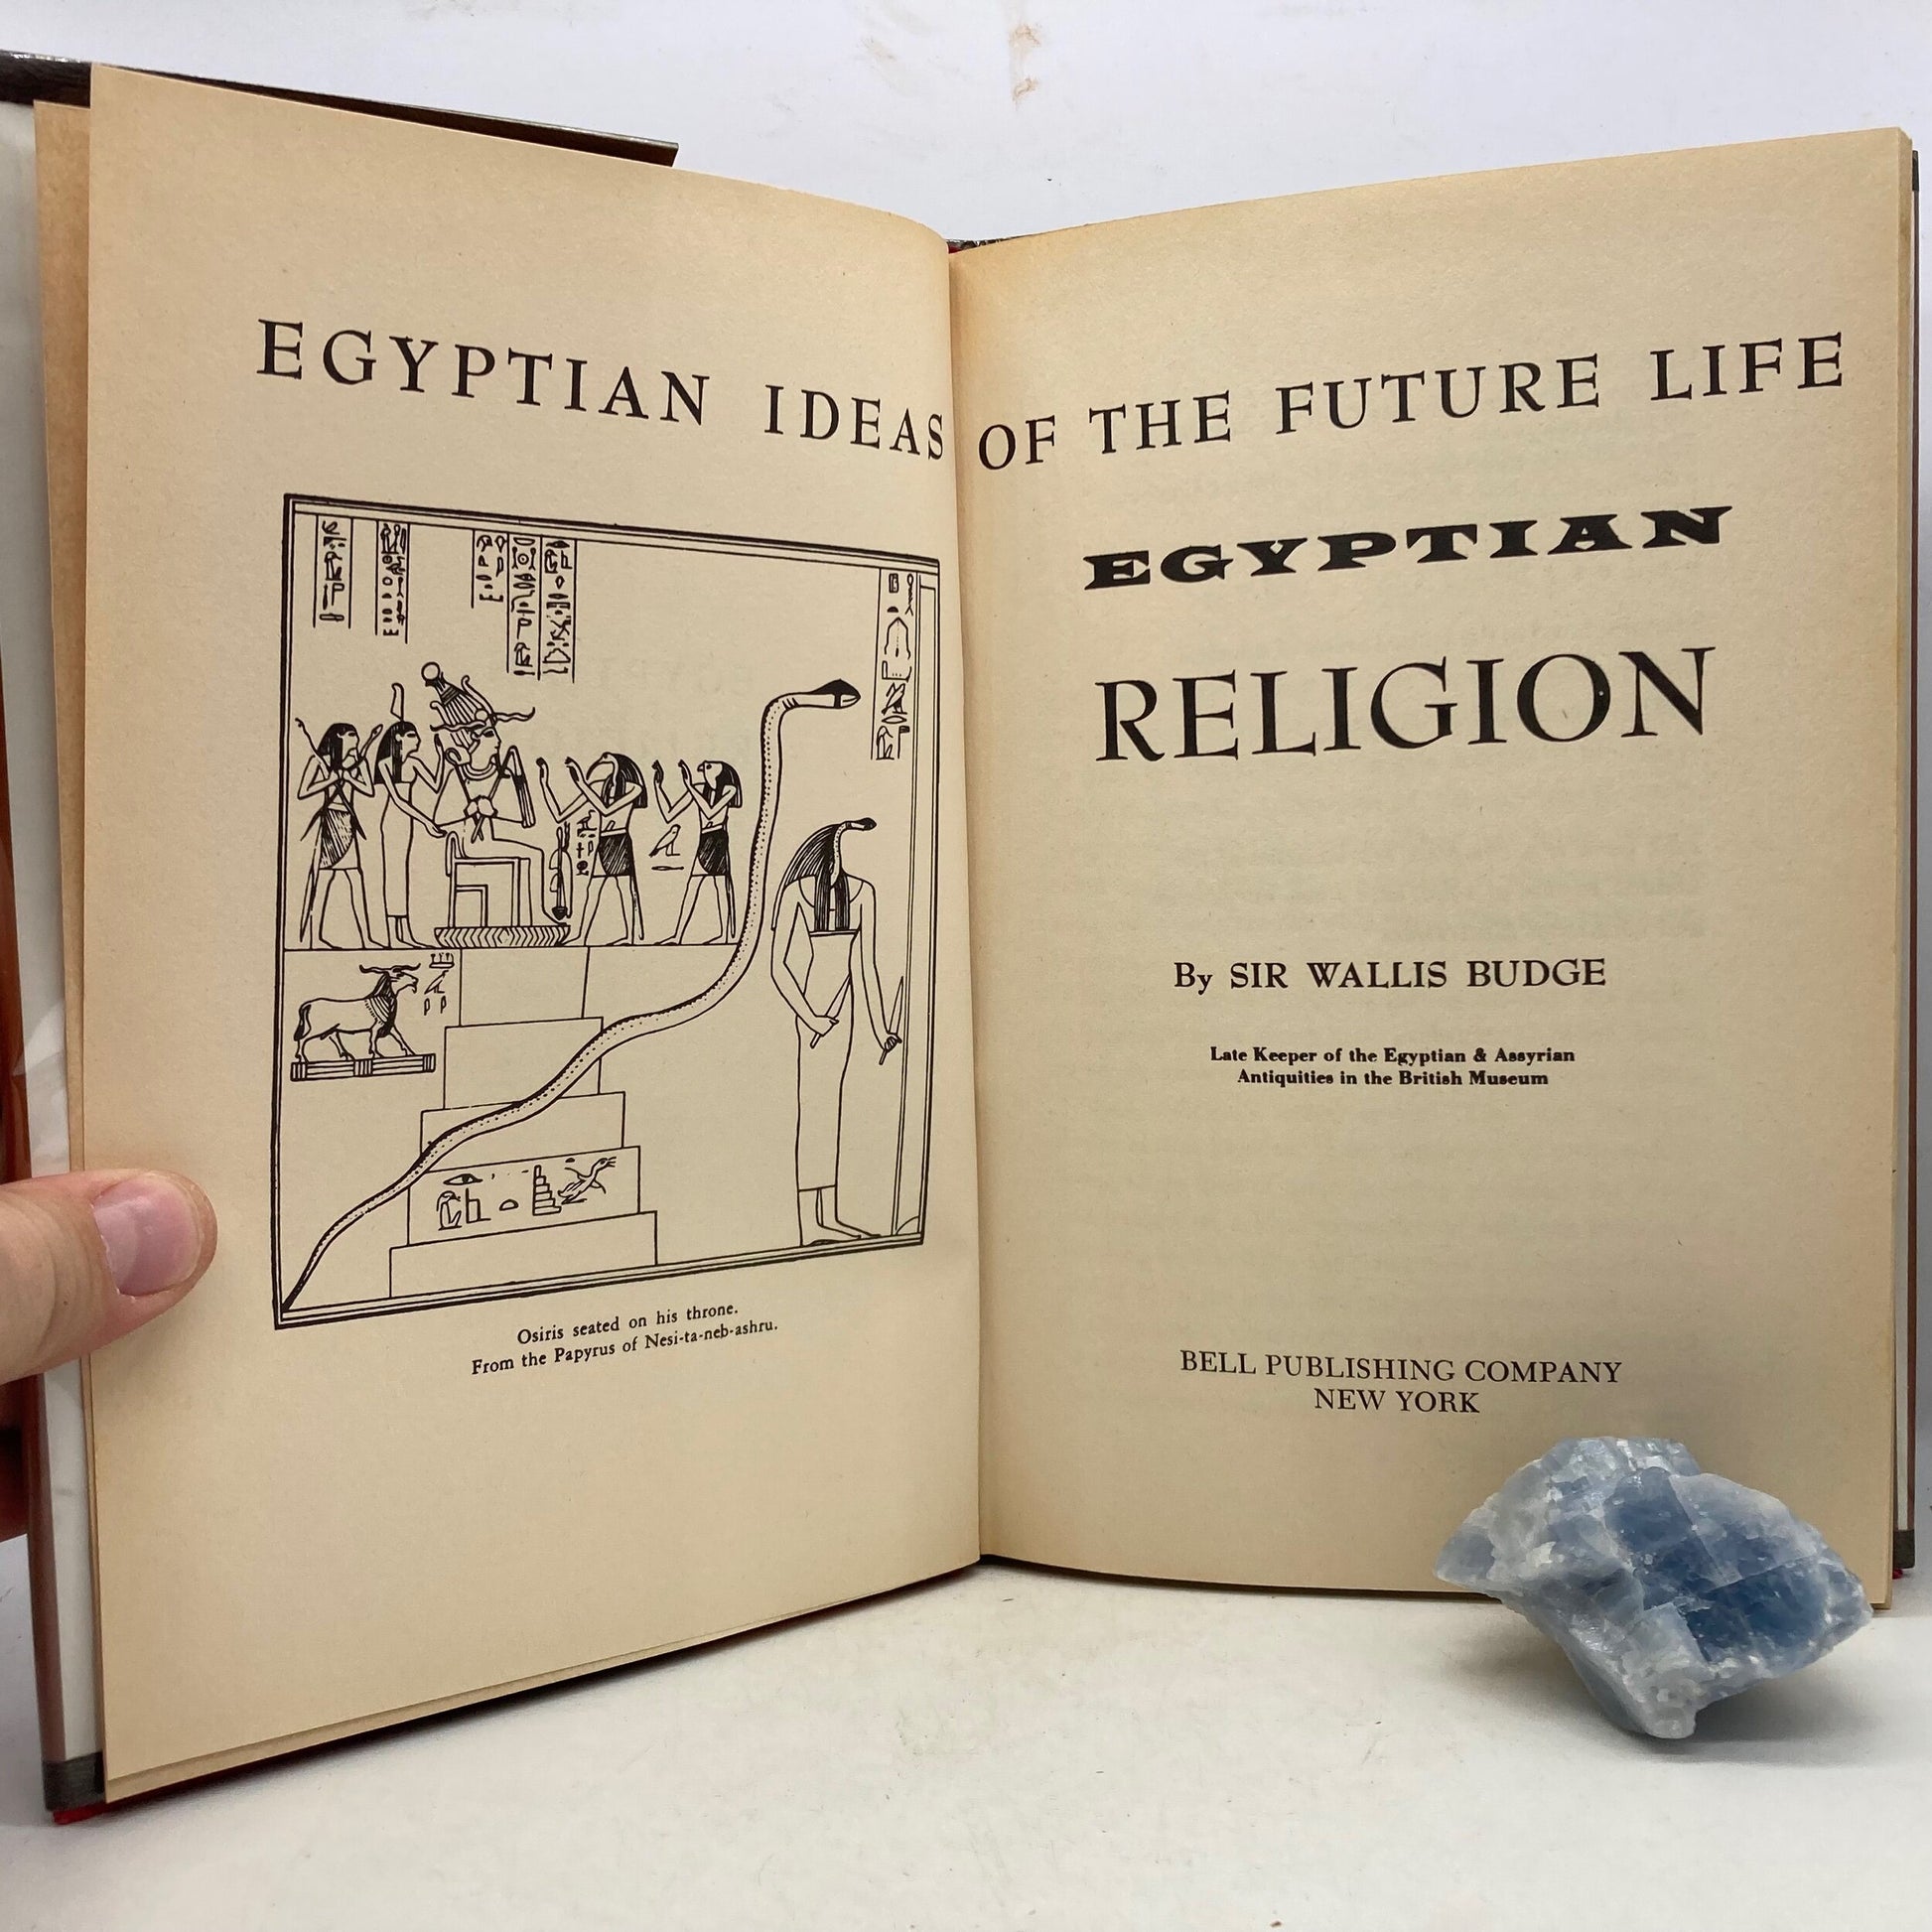 BUDGE, E.A. Wallis "Egyptian Religion" [Bell, 1959] - Buzz Bookstore